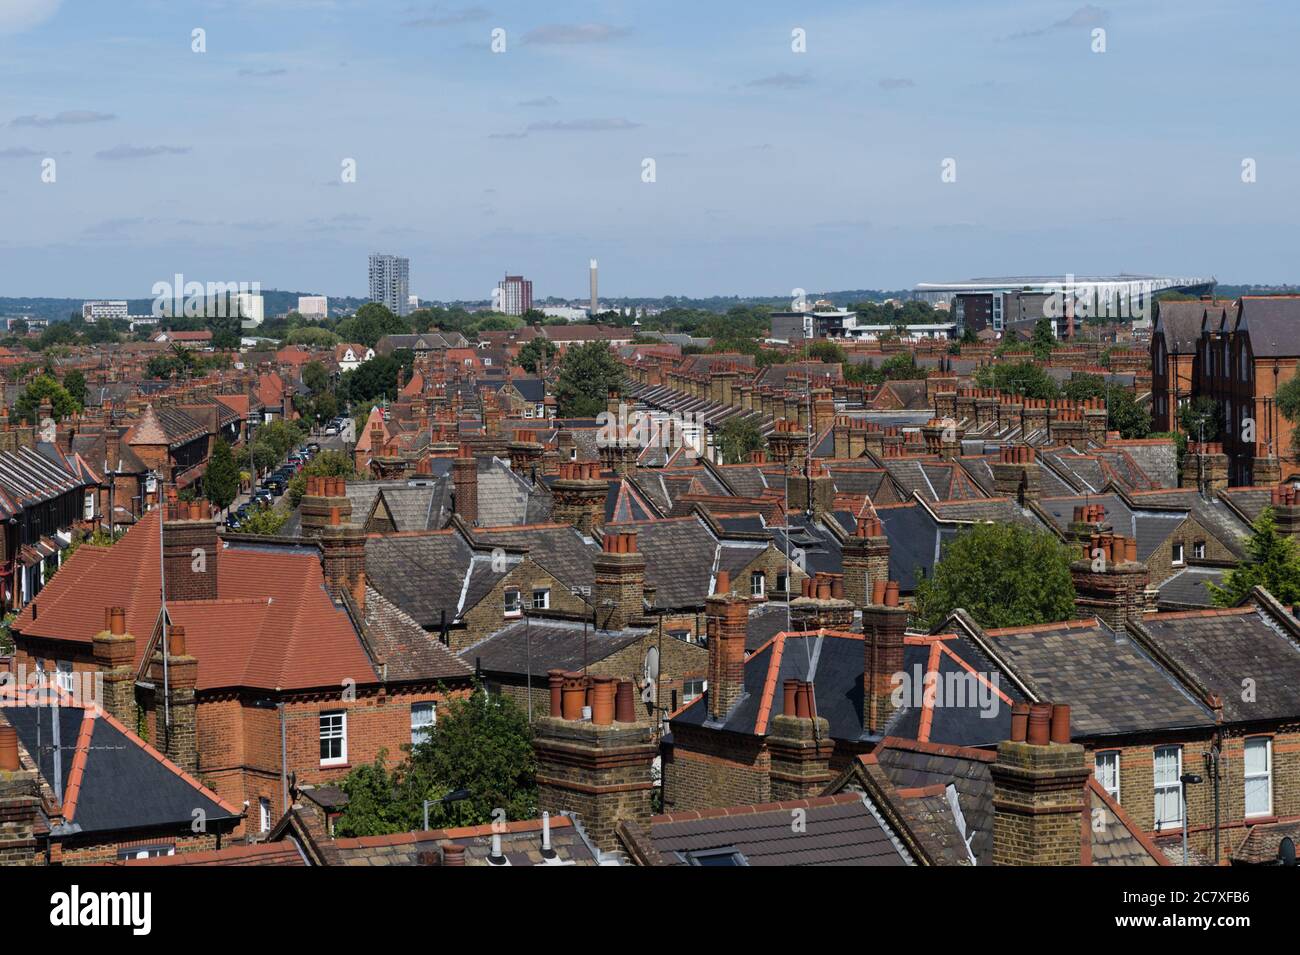 Ansicht von Wohnungen und anderen Gebäuden in Wood Green, London, UK. Das Fußballstadion Tottenham Hotspur ist zu sehen. Stockfoto